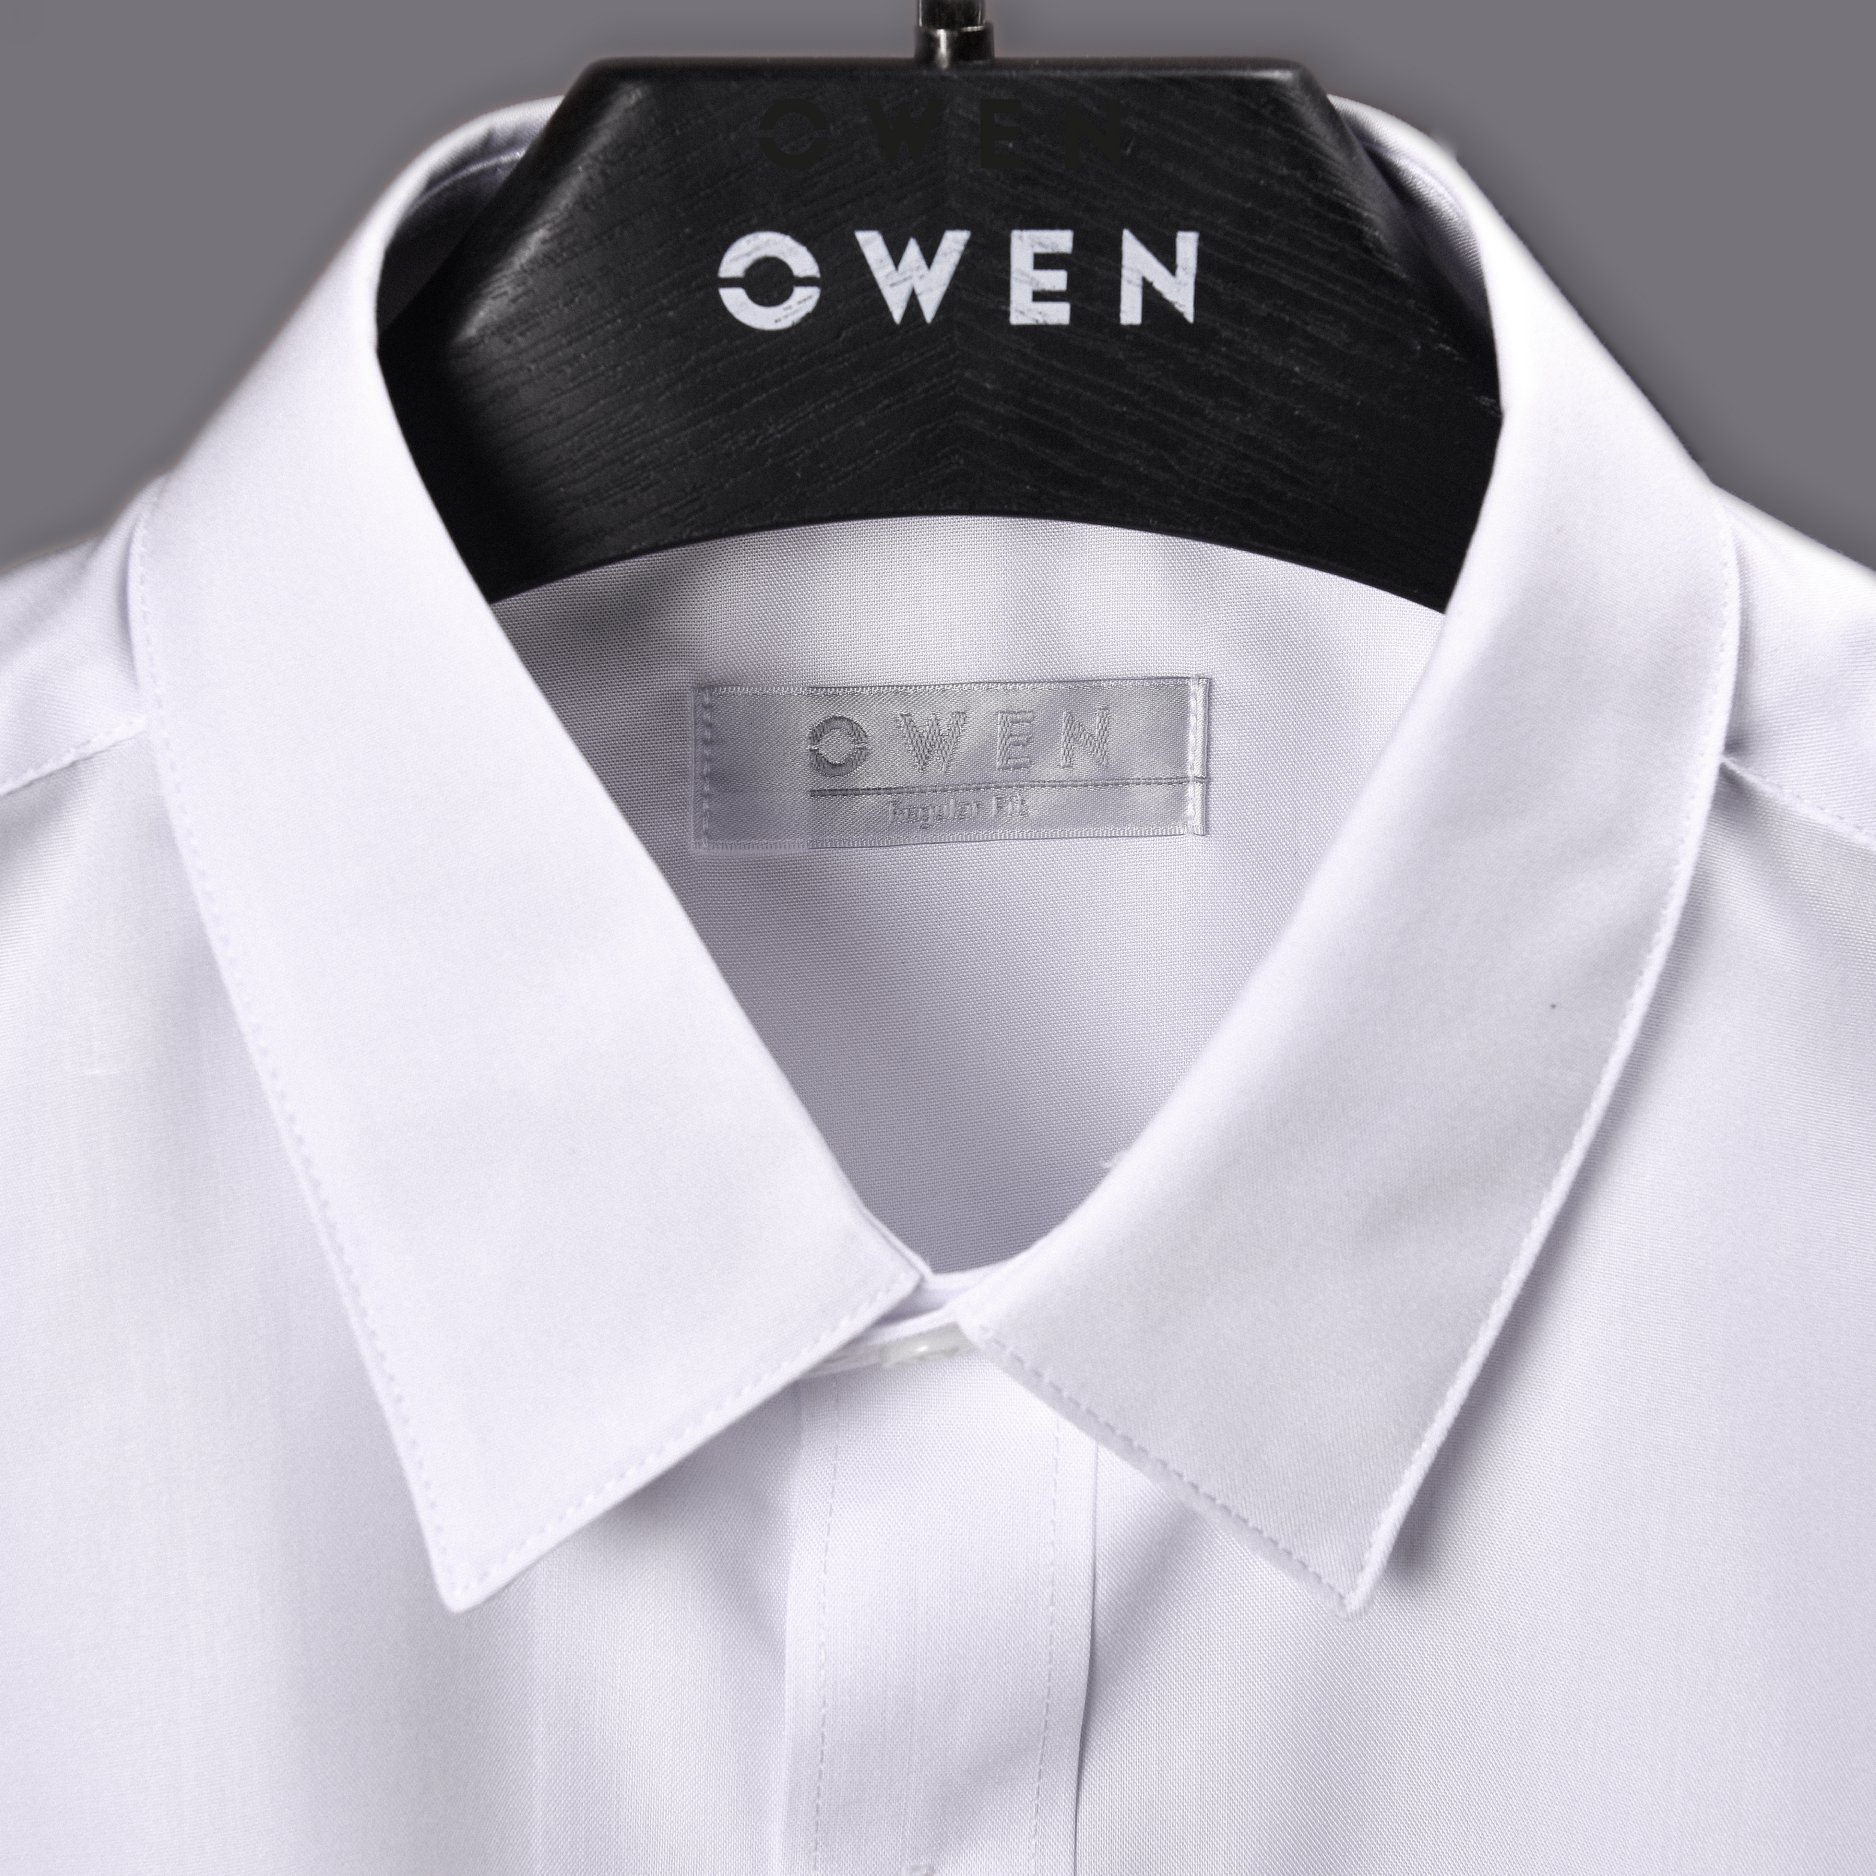 OWEN - Áo sơ mi trắng dài tay Owen chất sồi siêu mềm mịn (Regularfit / Slimfit)